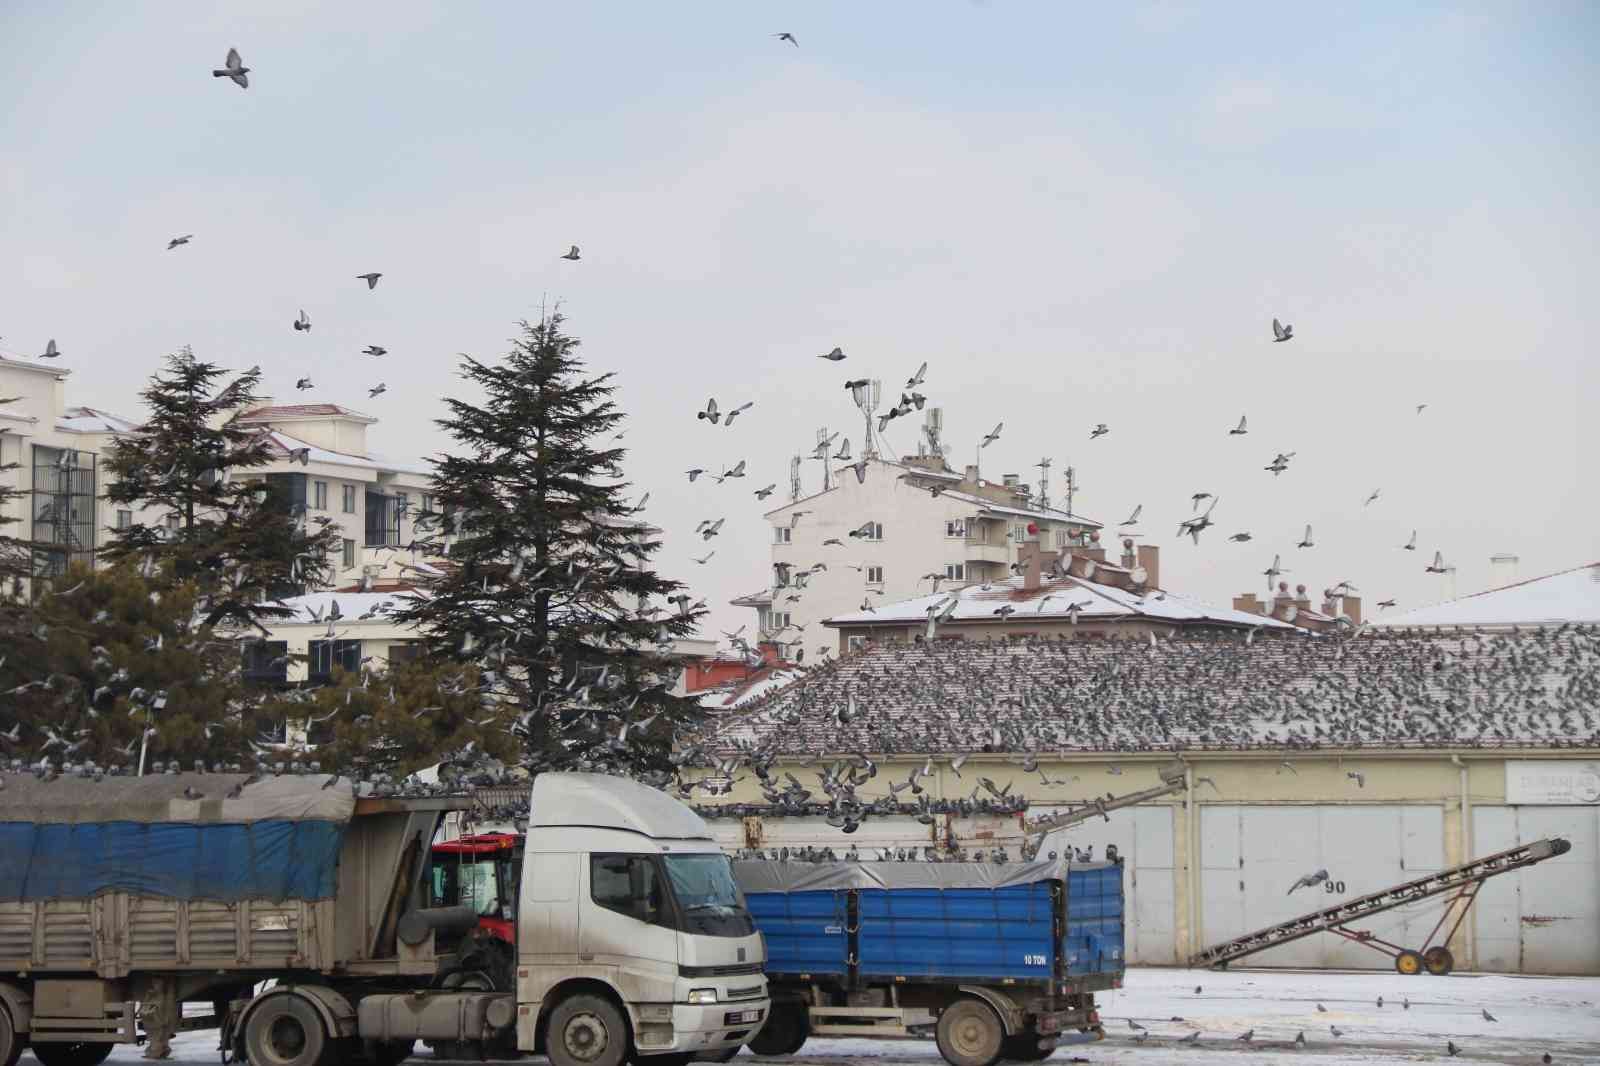 Soğukta yiyecek araya güvercinler Ticaret Borsası’nda adeta nöbet tutuyor #eskisehir